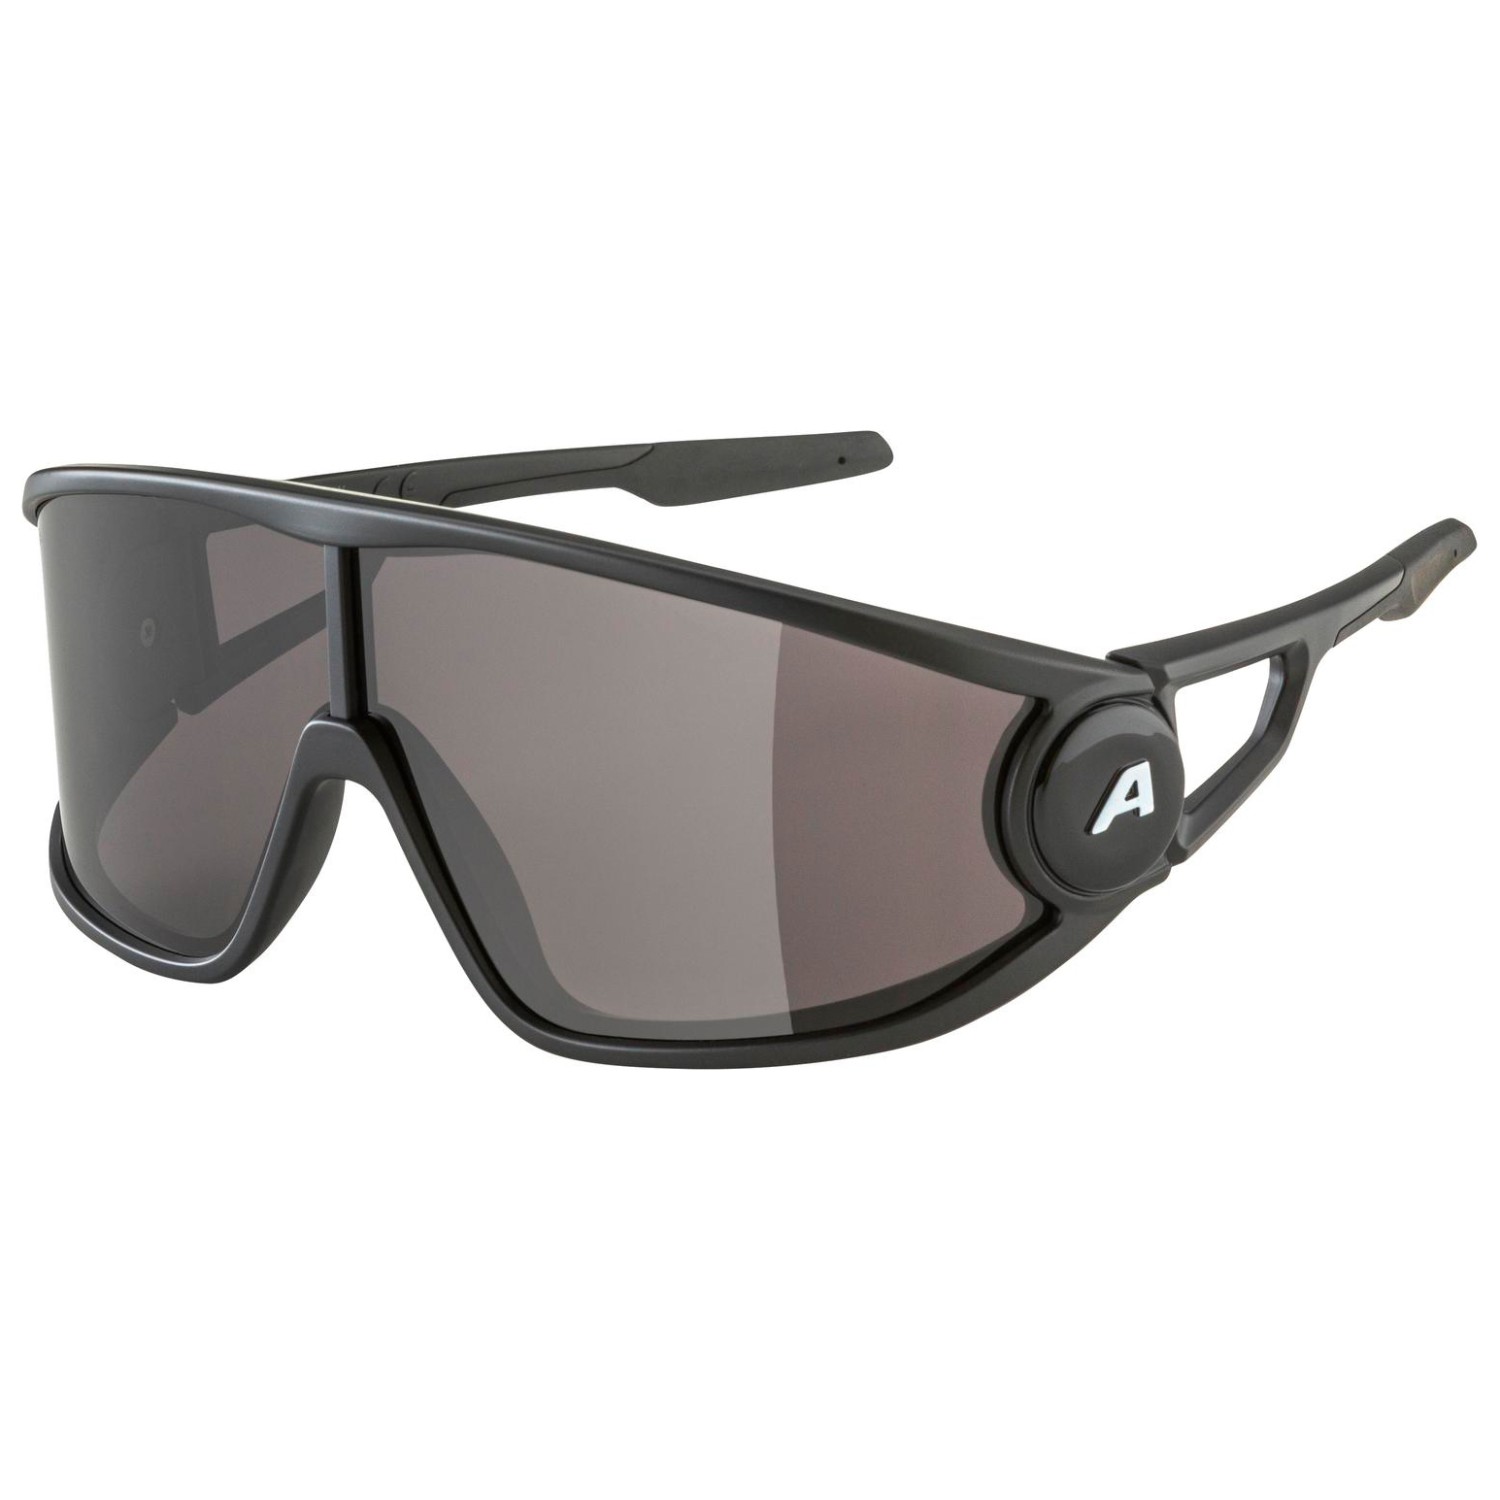 Солнцезащитные очки Alpina Legend Cat 3, цвет Black Matt очки солнцезащитные alpina luzy белый пурпурный зеркальный a8571310